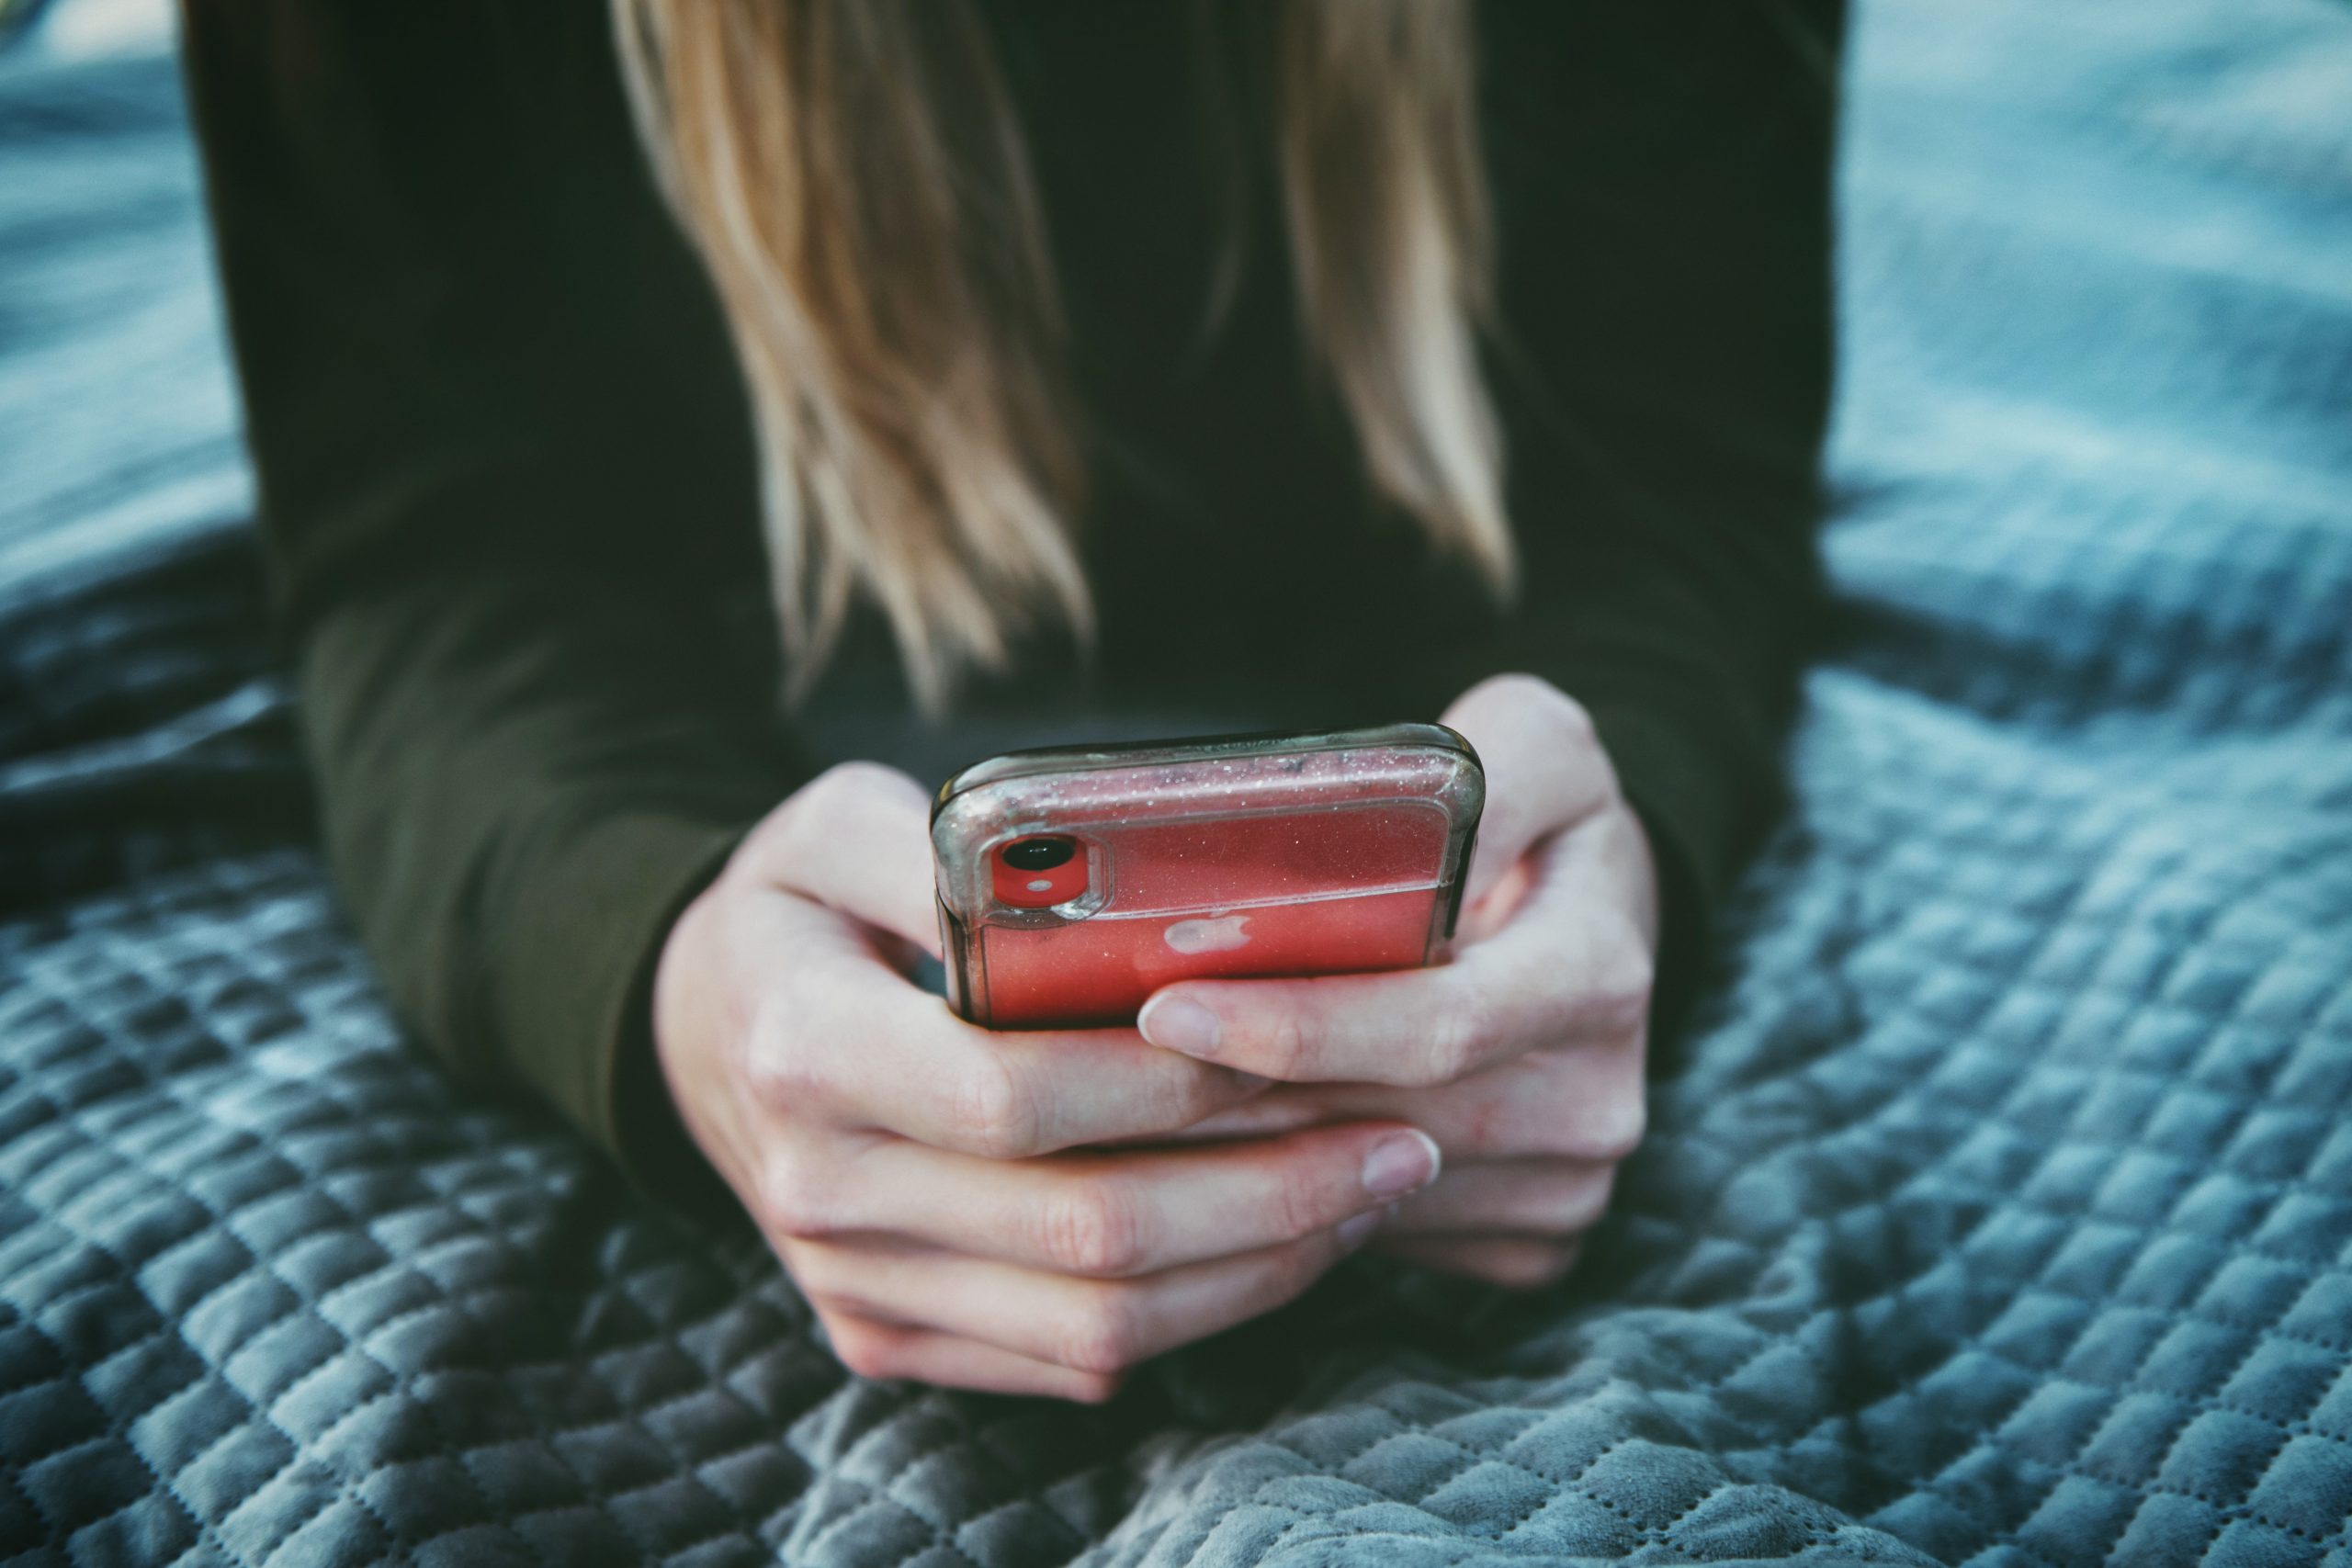 Il legame tra app di dating, ipersessualità e depressione